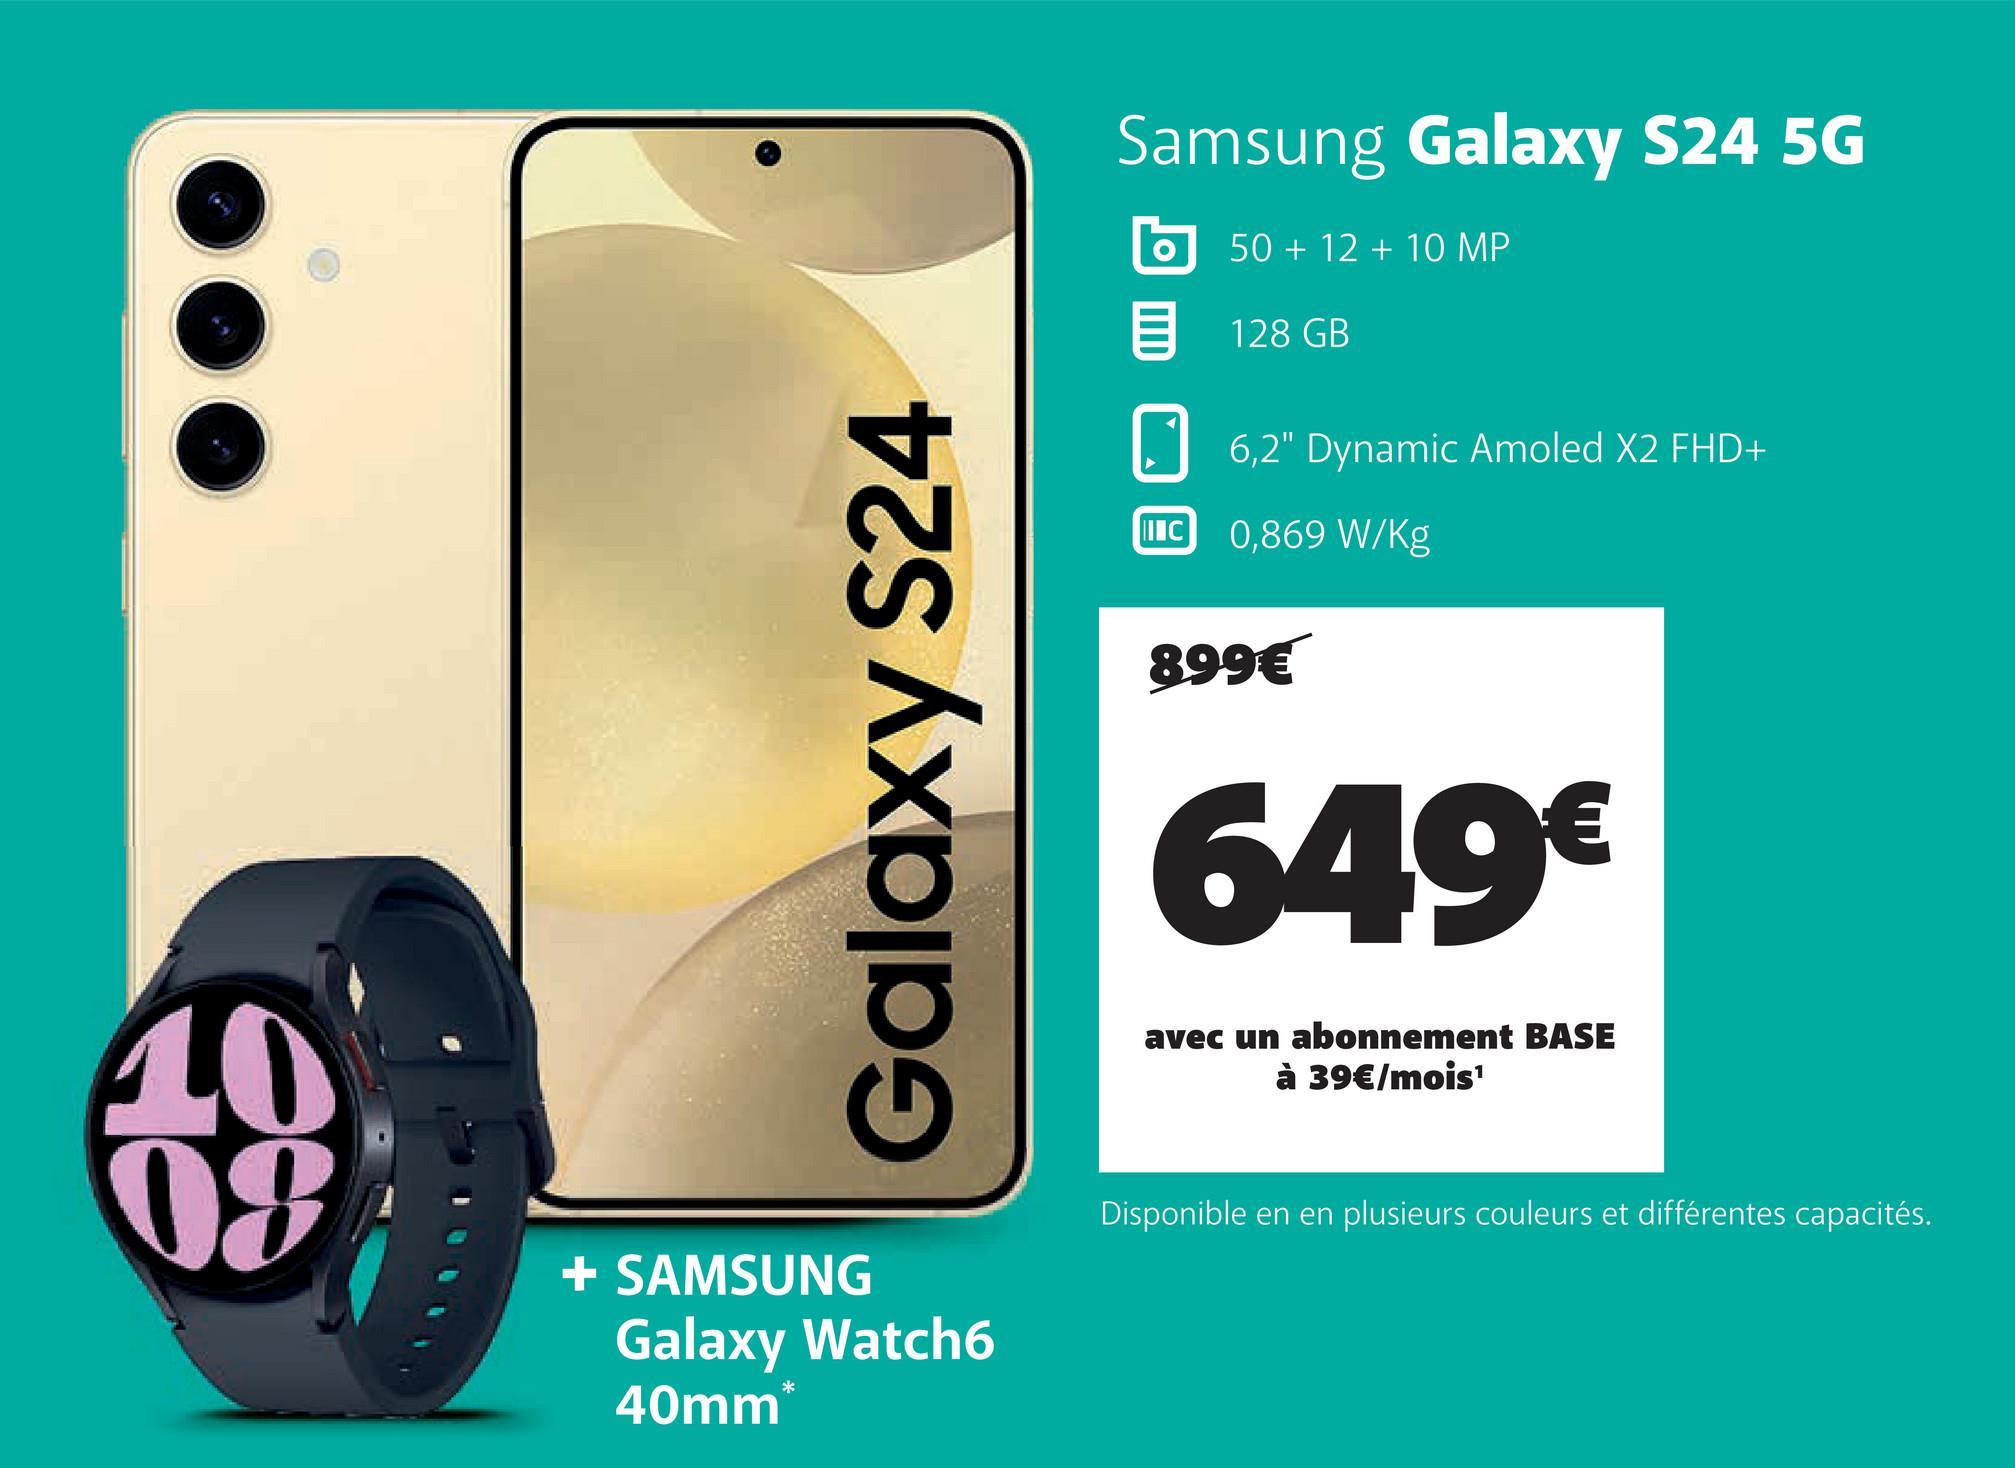 Galaxy S24
Samsung Galaxy S24 5G
50+12+10 MP
128 GB
6,2" Dynamic Amoled X2 FHD+
II C 0,869 W/Kg
899€
649€
avec un abonnement BASE
à 39€/mois¹
10
08
+ SAMSUNG
Galaxy Watch6
40mm*
Disponible en en plusieurs couleurs et différentes capacités.